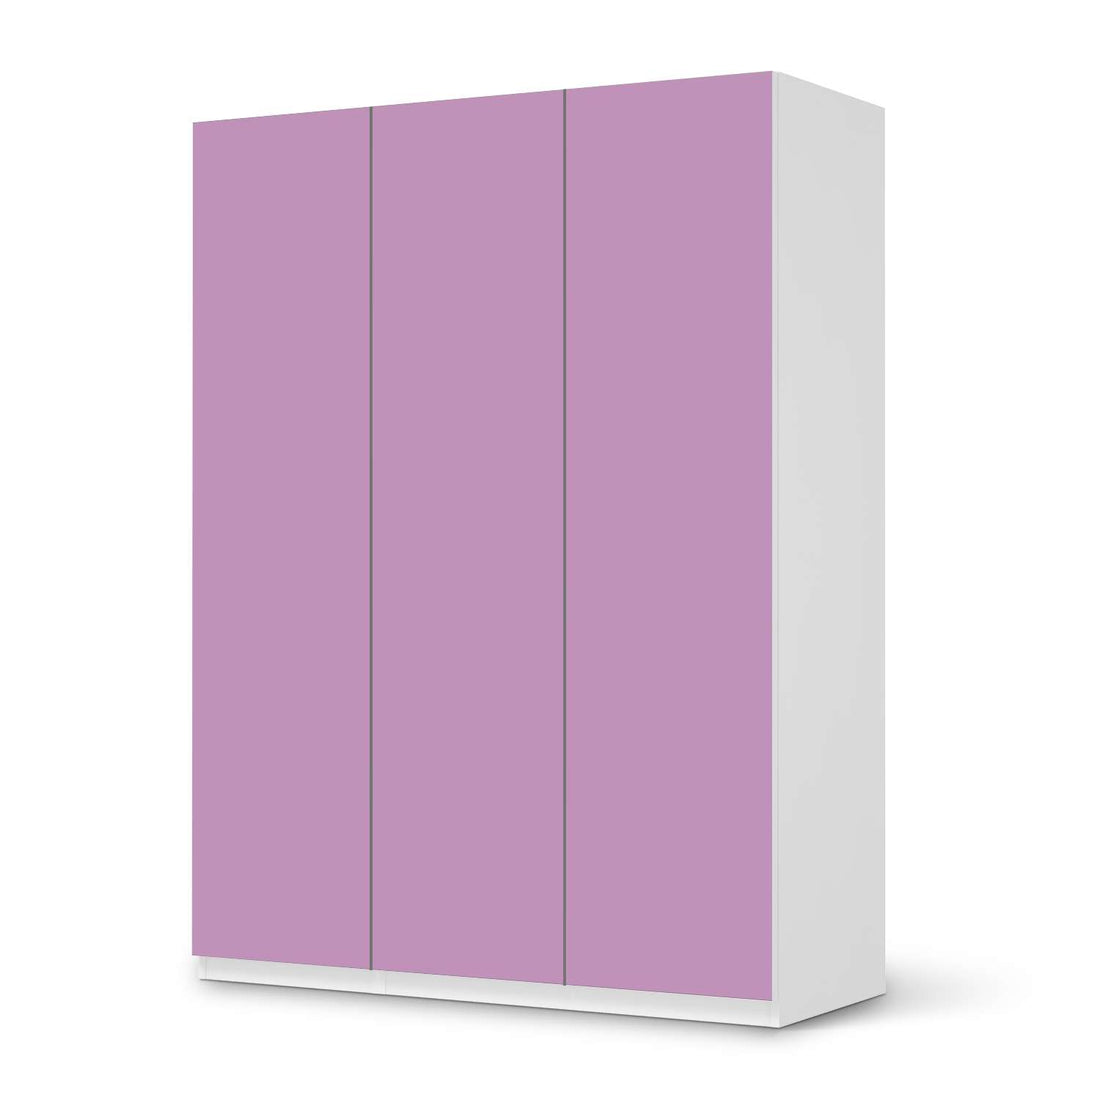 Folie für Möbel Flieder Light - IKEA Pax Schrank 201 cm Höhe - 3 Türen - weiss